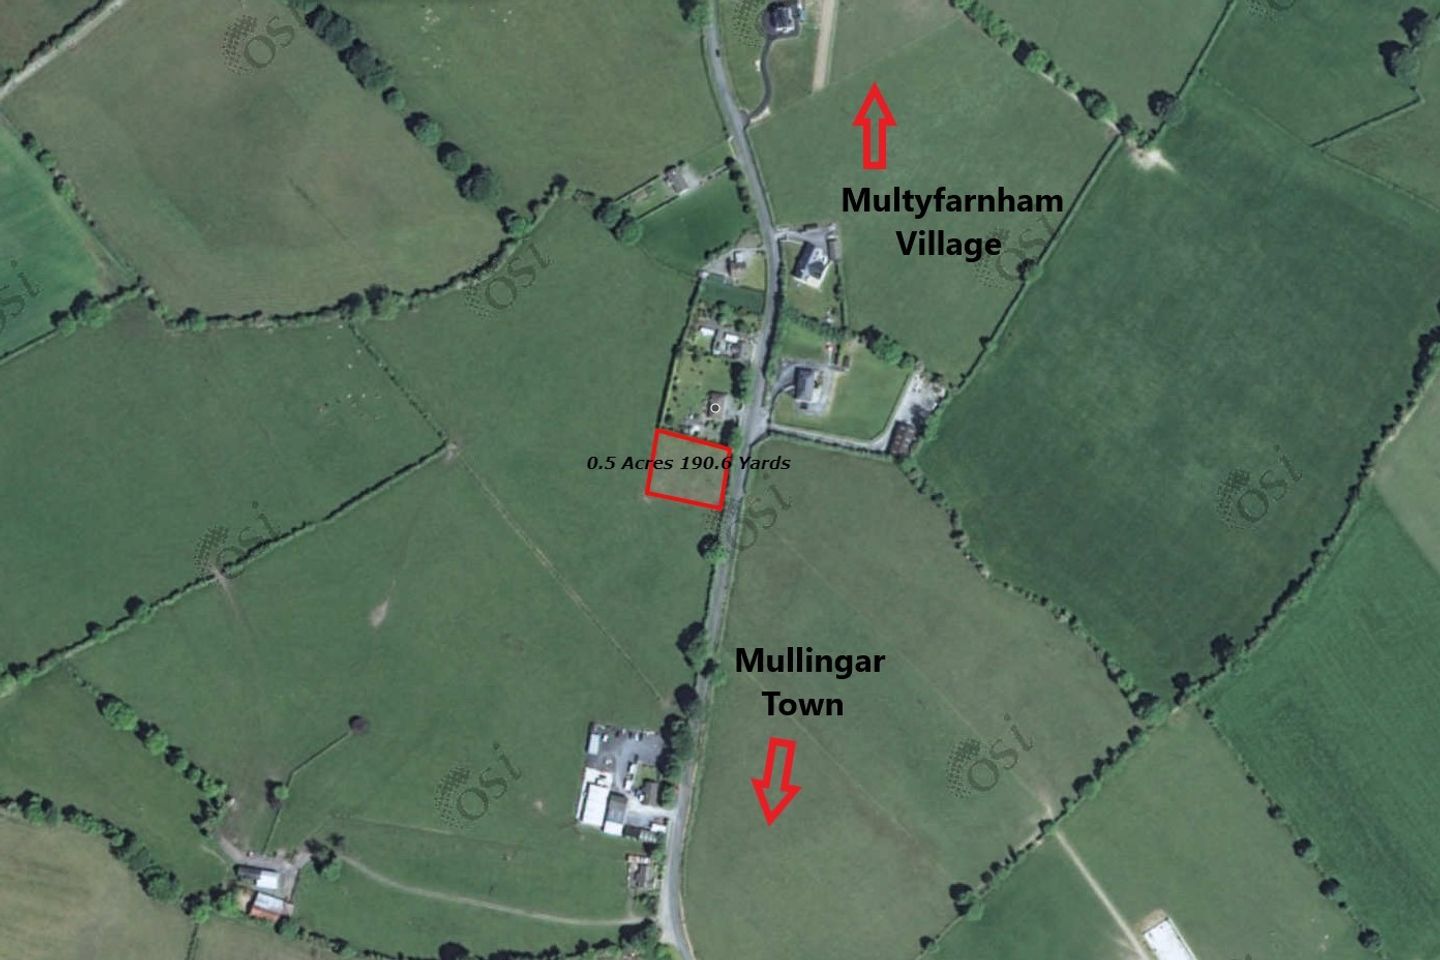 Culleendarragh, Multyfarnham, Co. Westmeath